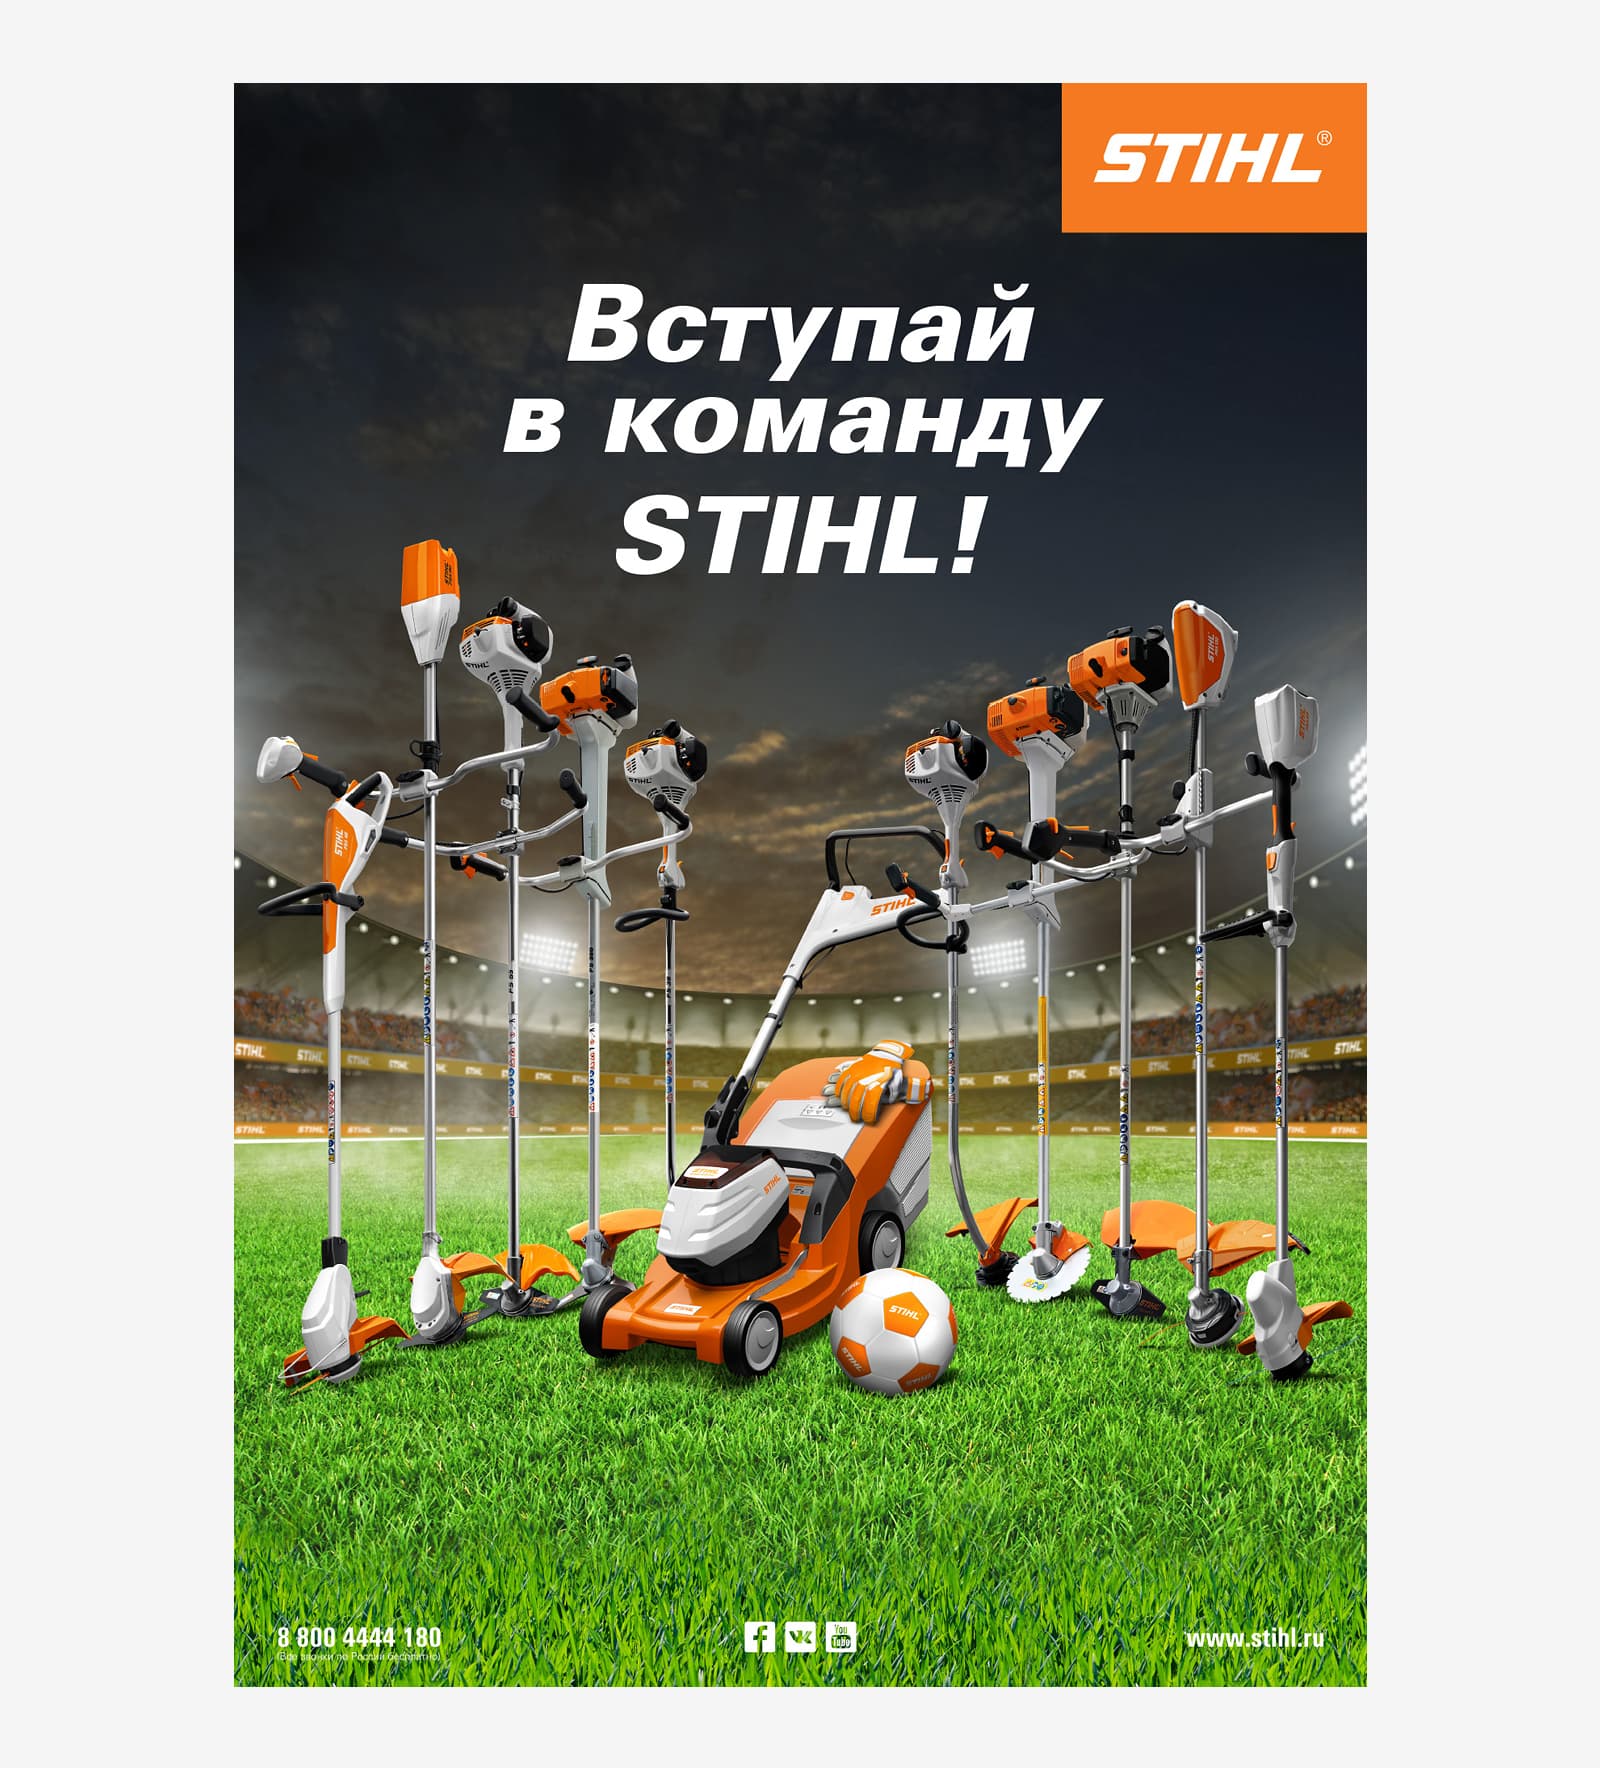 Креативный рекламный плакат компании STIHL к финалу Чемпионата мира по футболу 2018 года в России